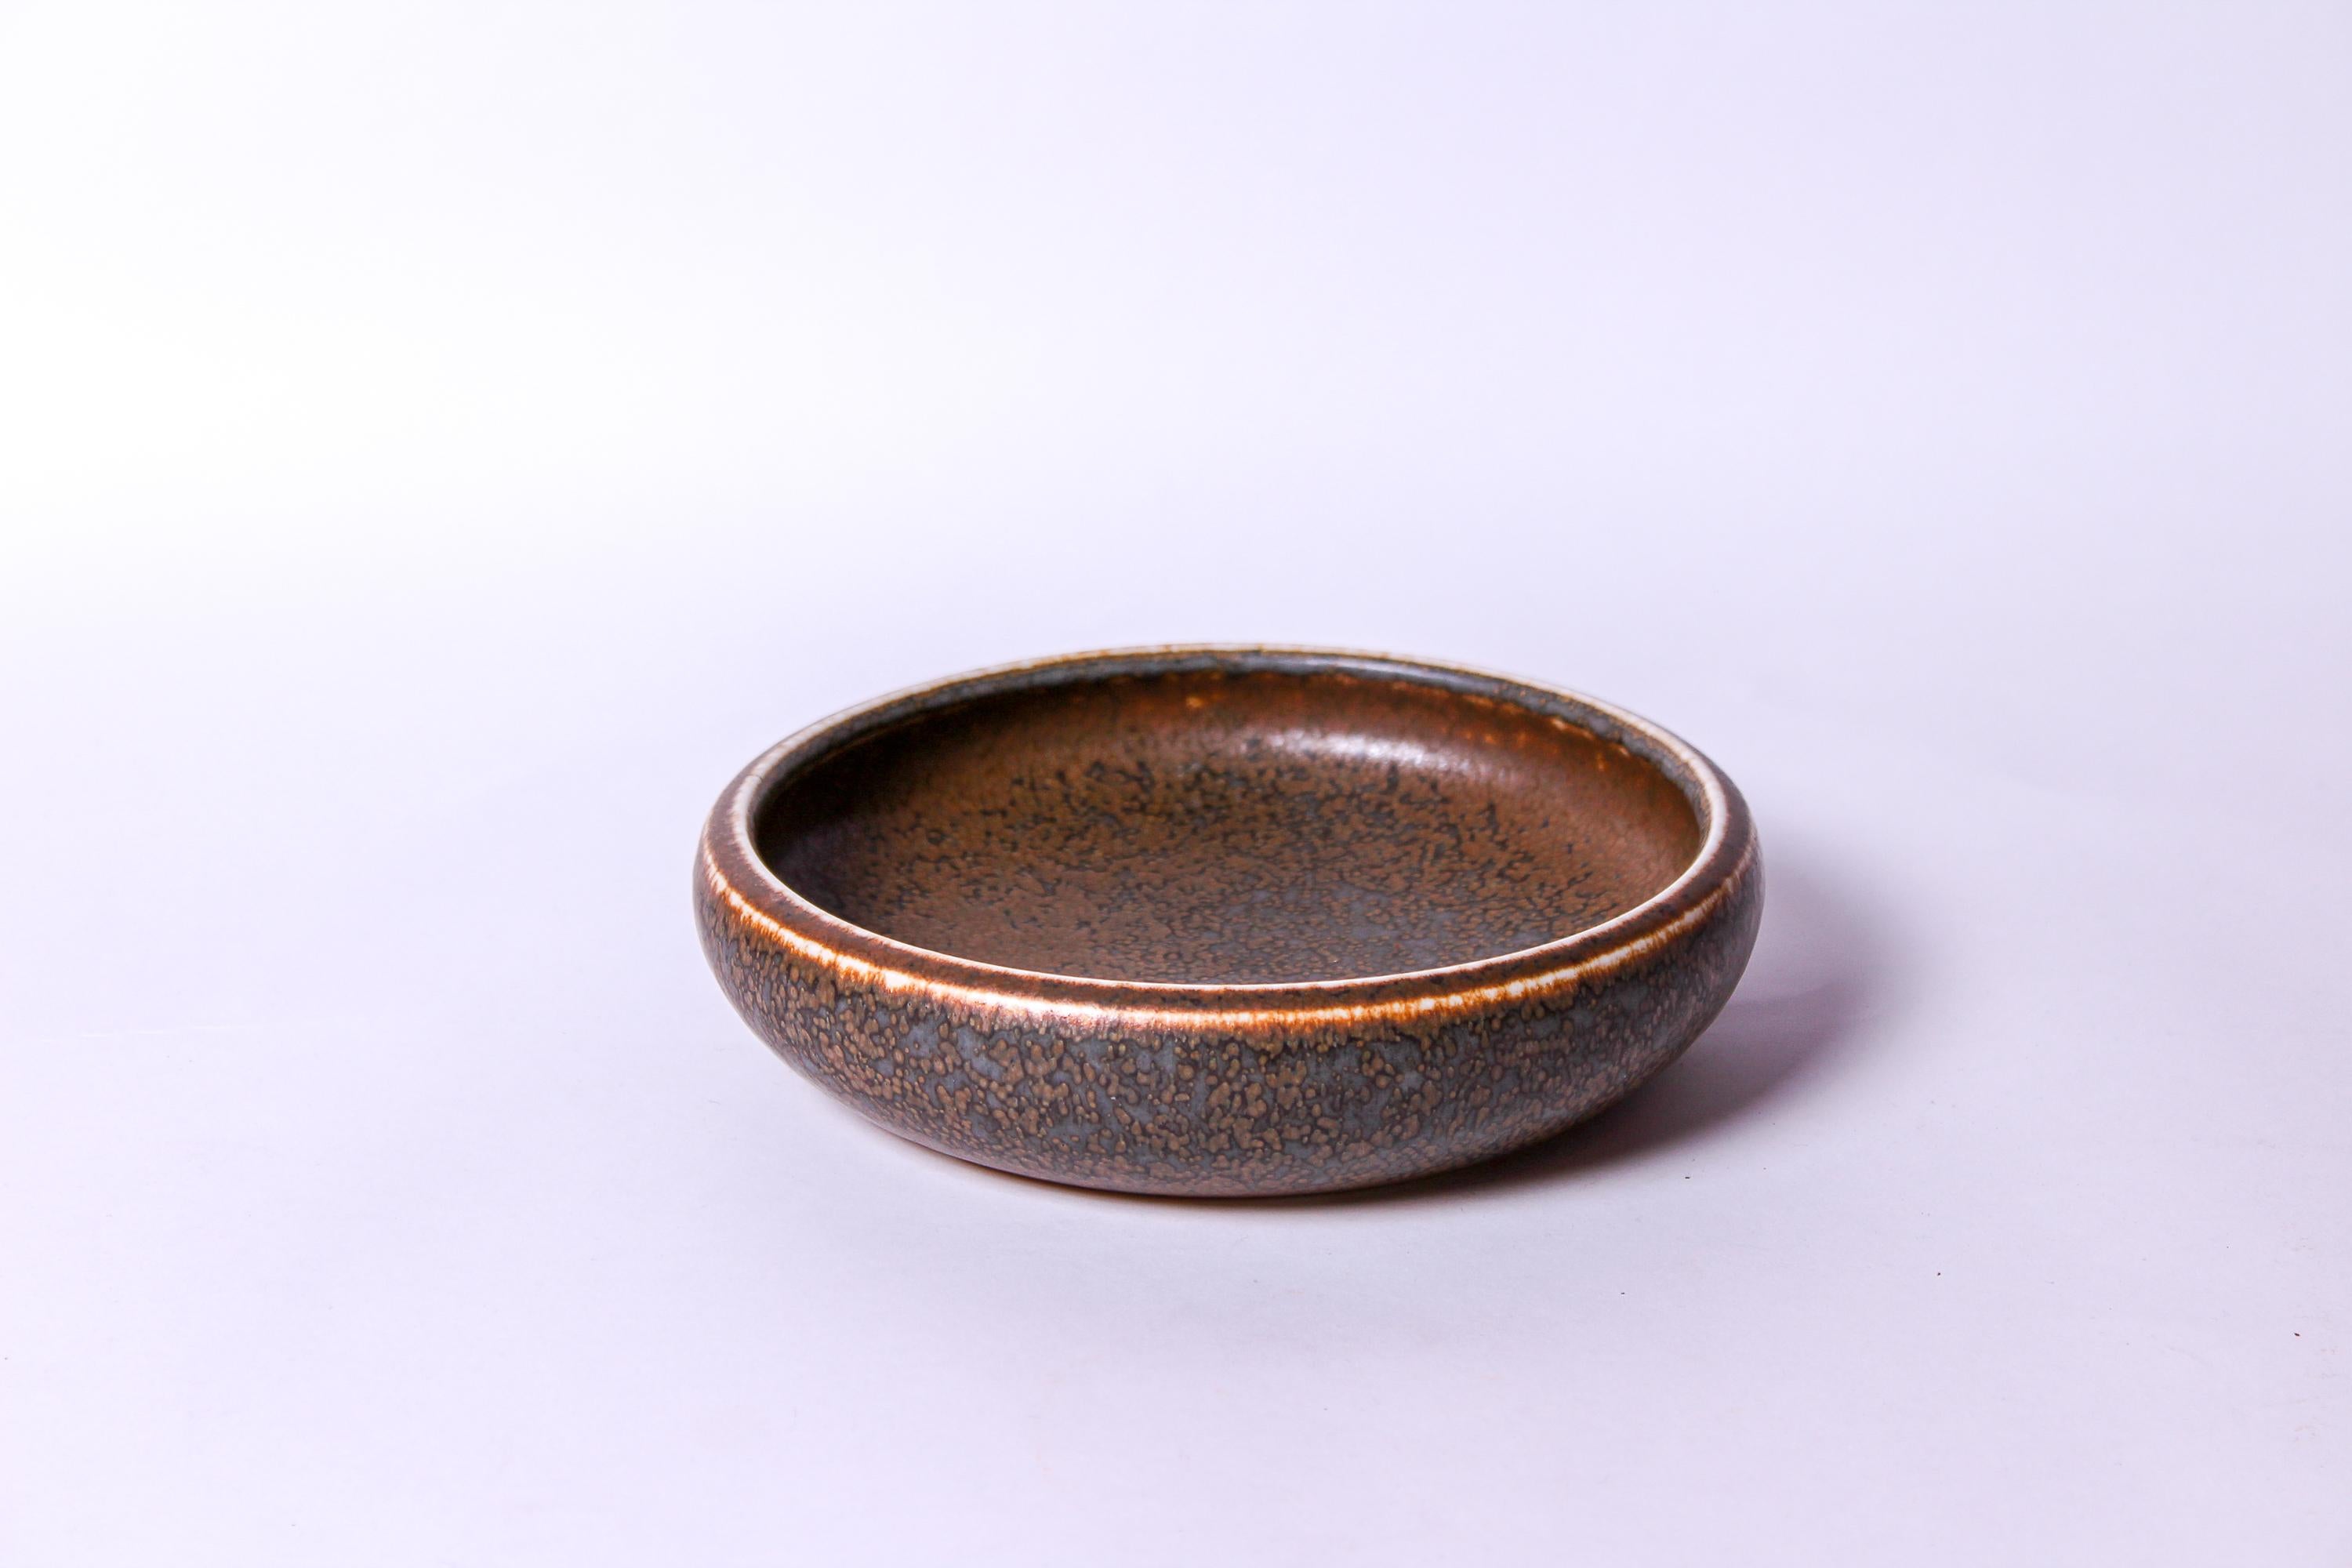 Scandinavian Modern Midcentury Ceramic Bowl by Carl-Harry Stålhane for Rörstrand, 1950s For Sale